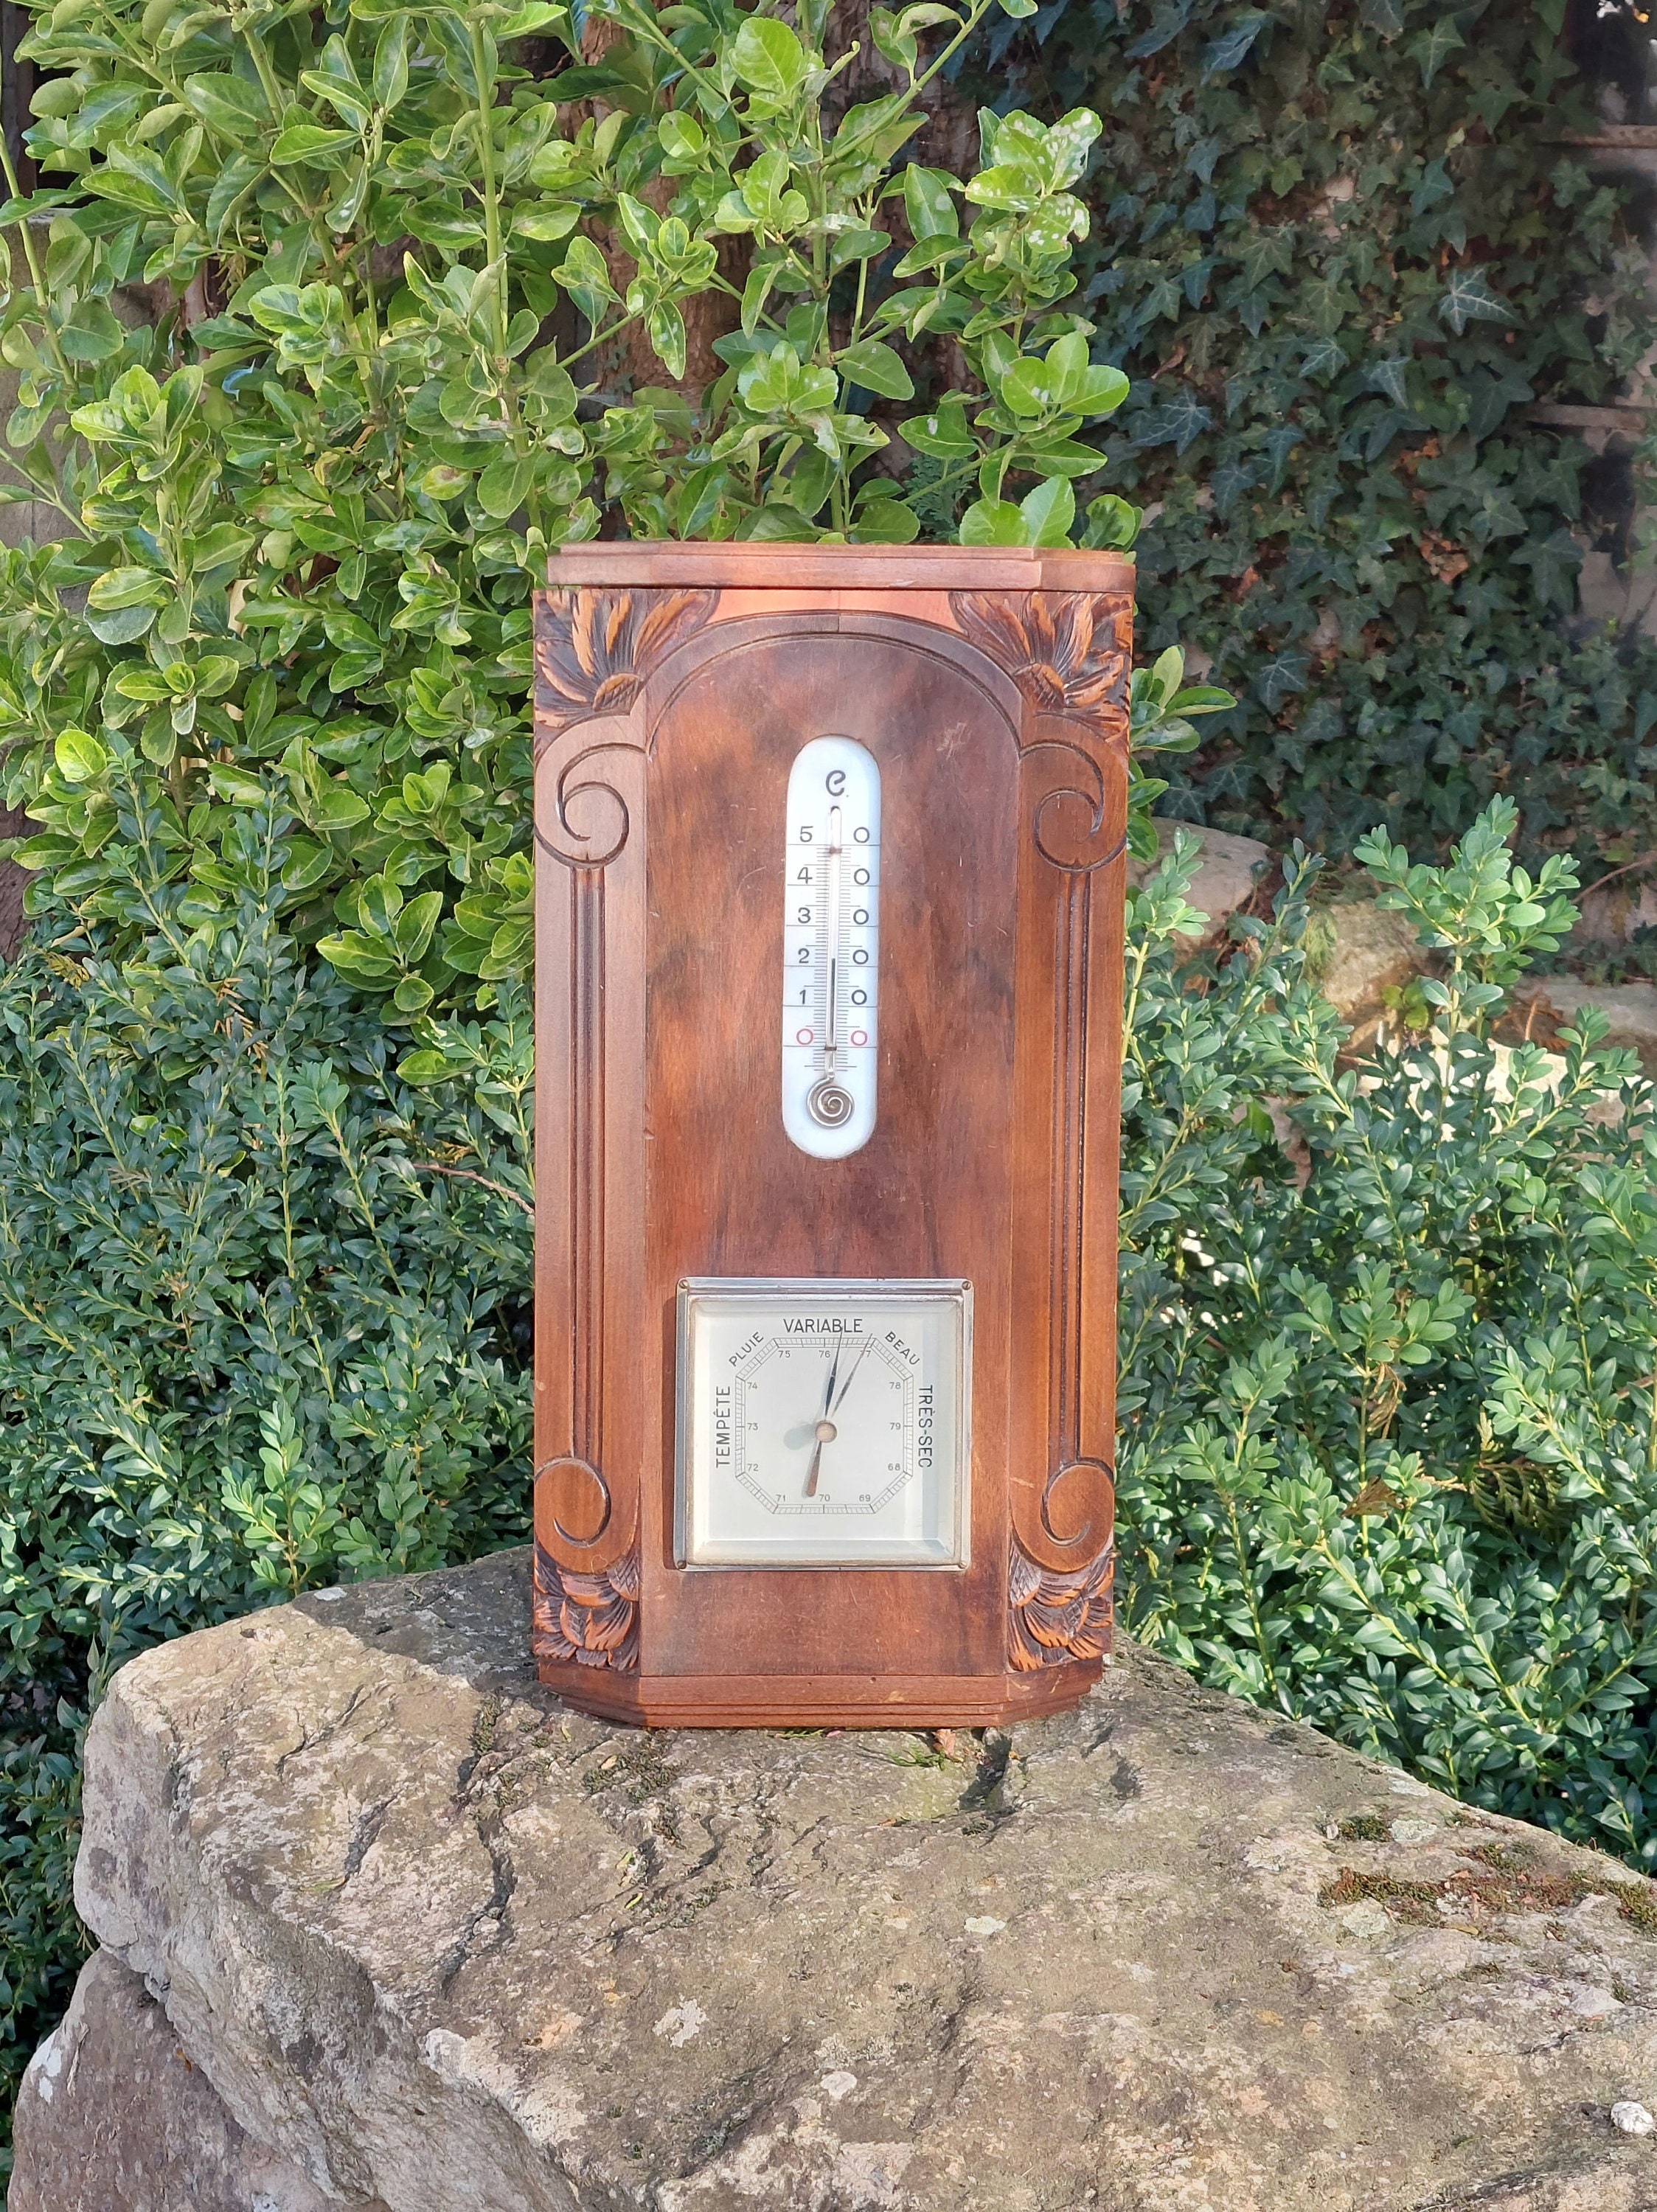 Horloge En Bois Vintage Avec Baromètre Et Ancien Thermomètre De